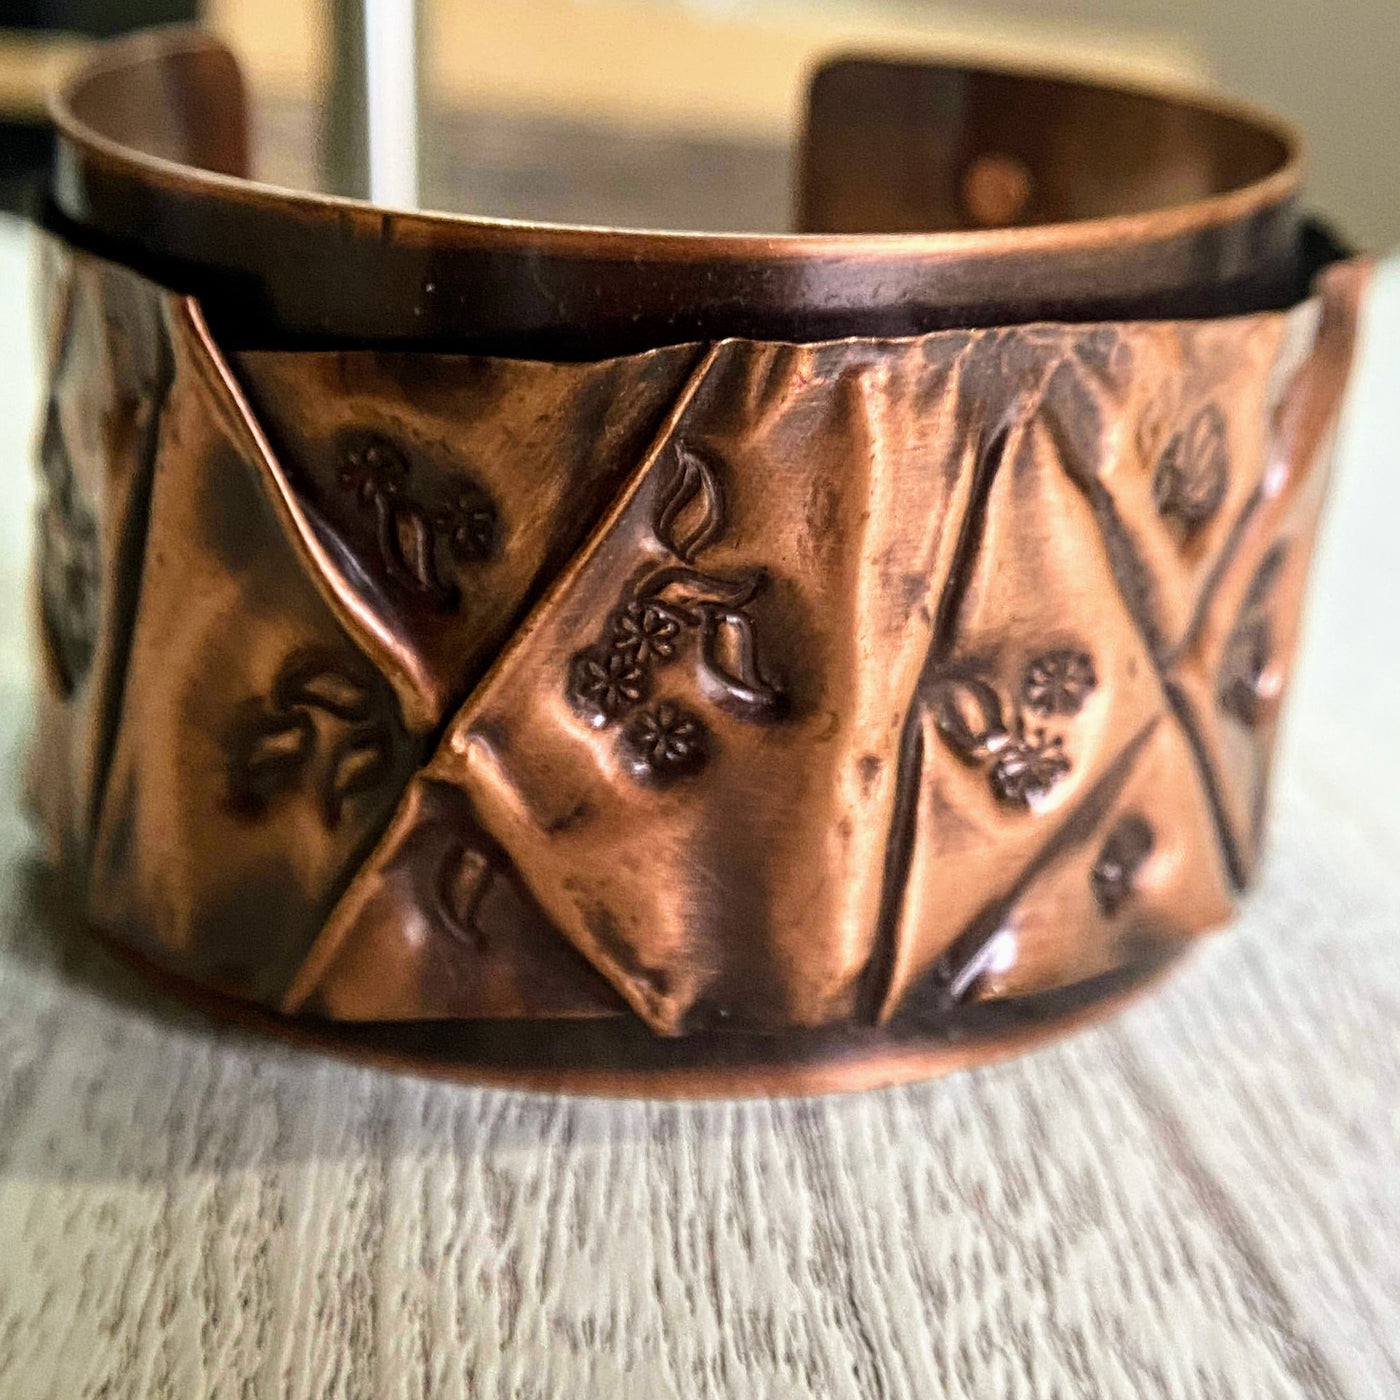 LEE-001 Copper Fold Formed Stamped Cuff Bracelet